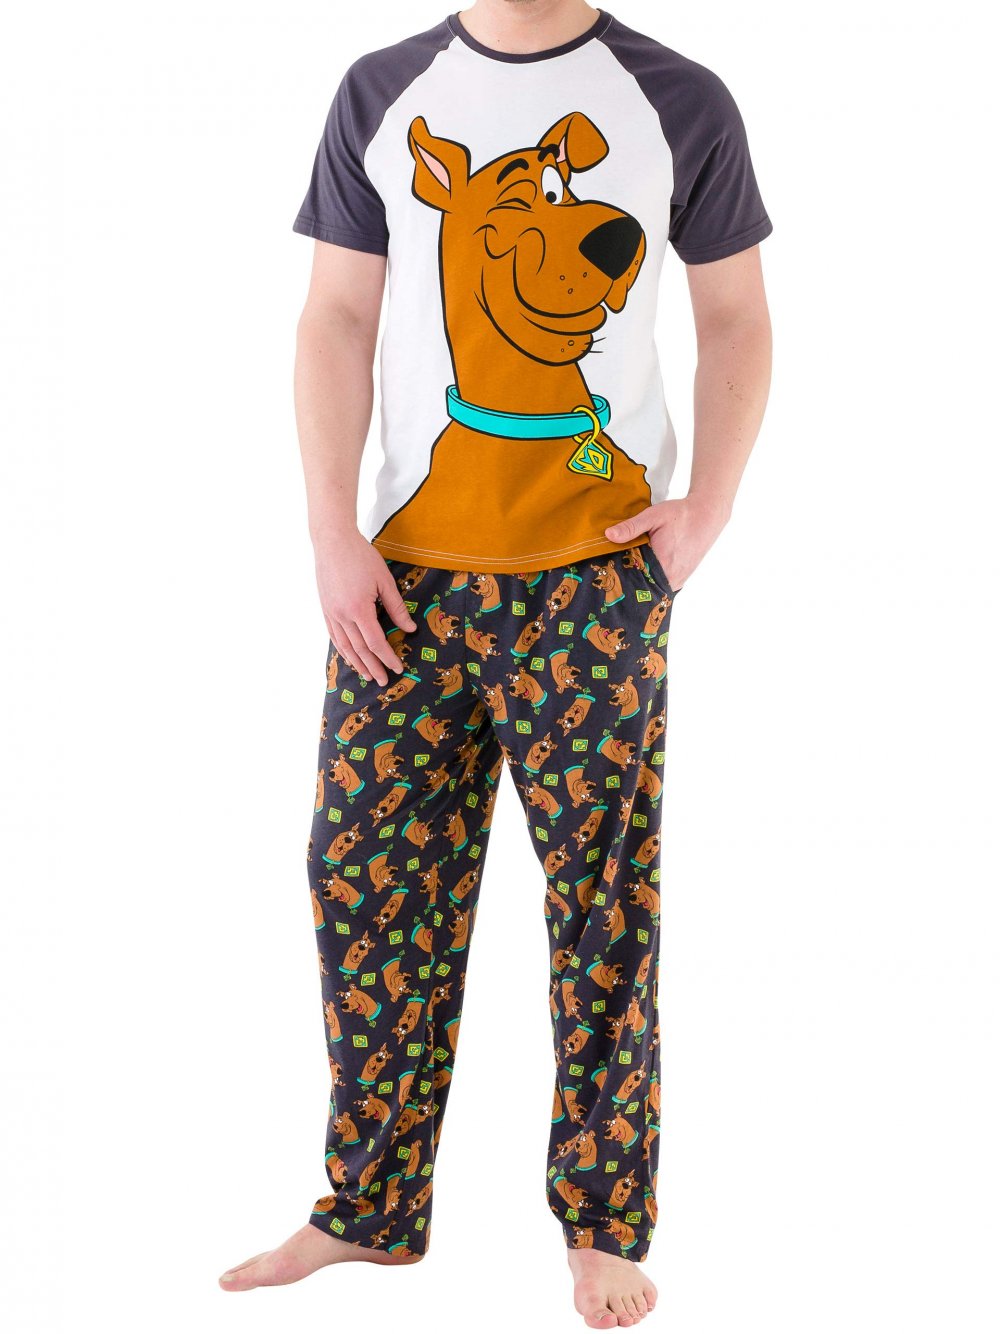 Пижама Scooby Doo